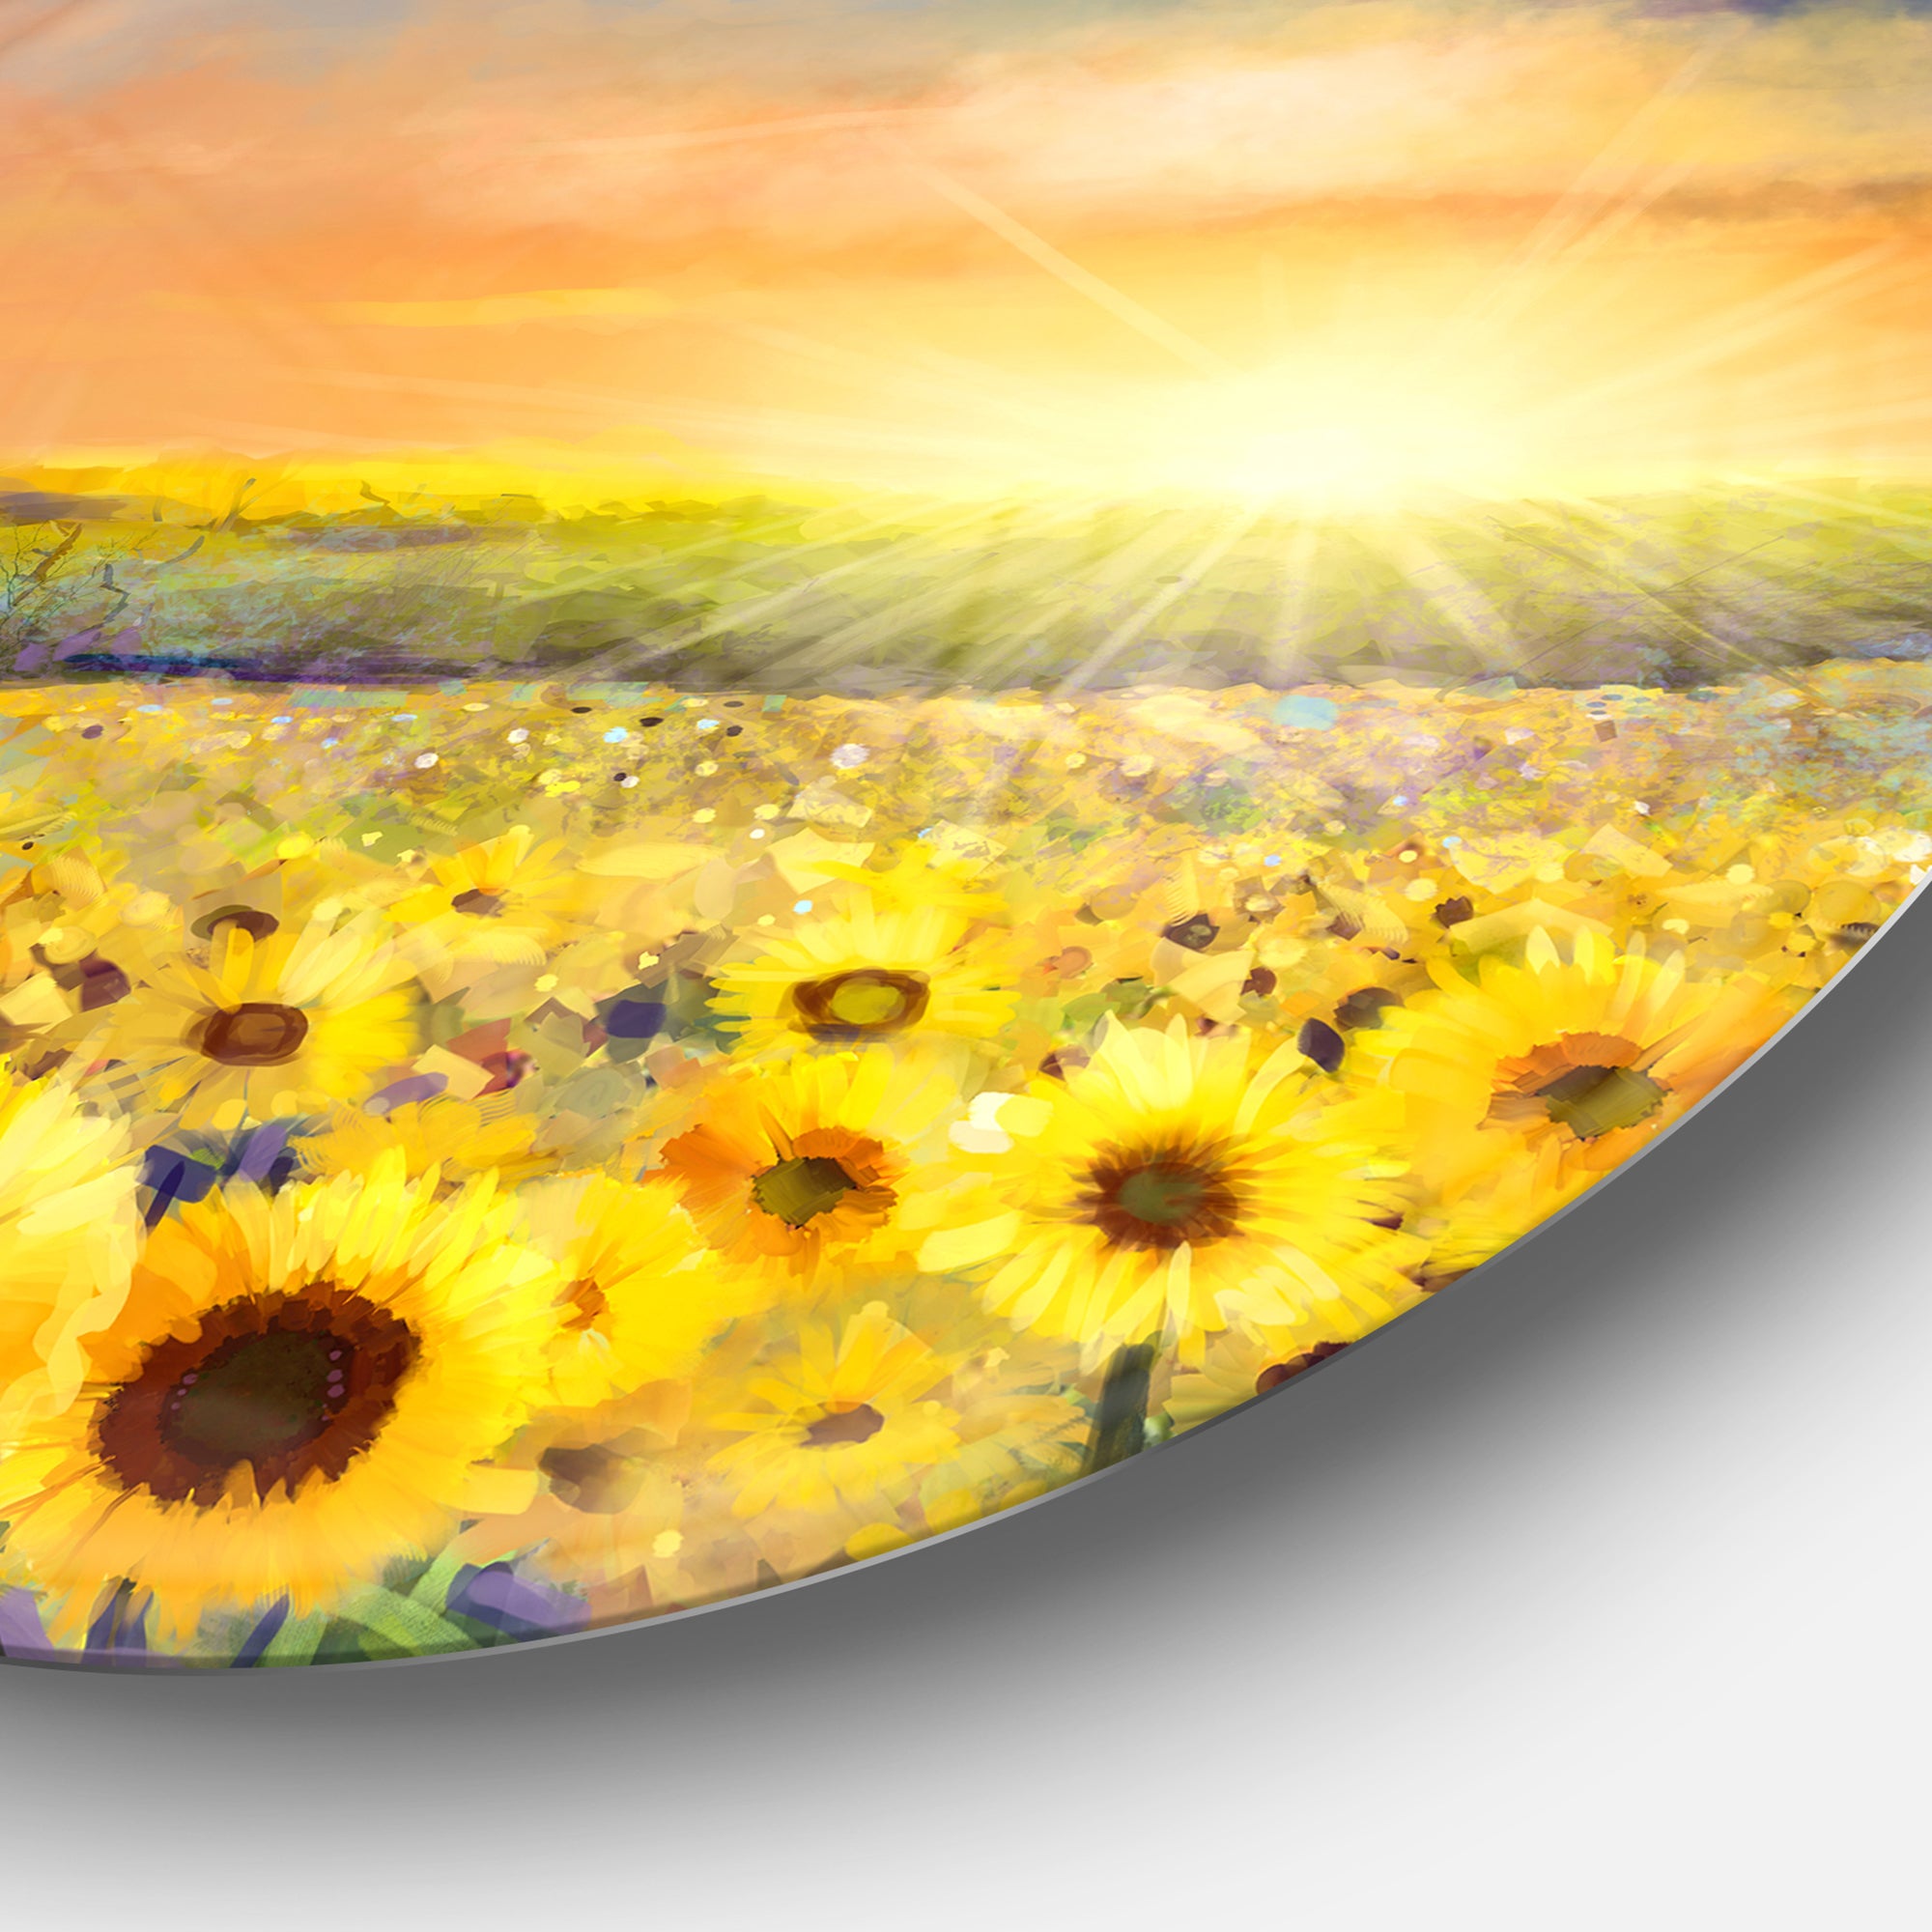 Sunset over Golden Sunflower Field' Disc Floral Metal Circle Wall Art